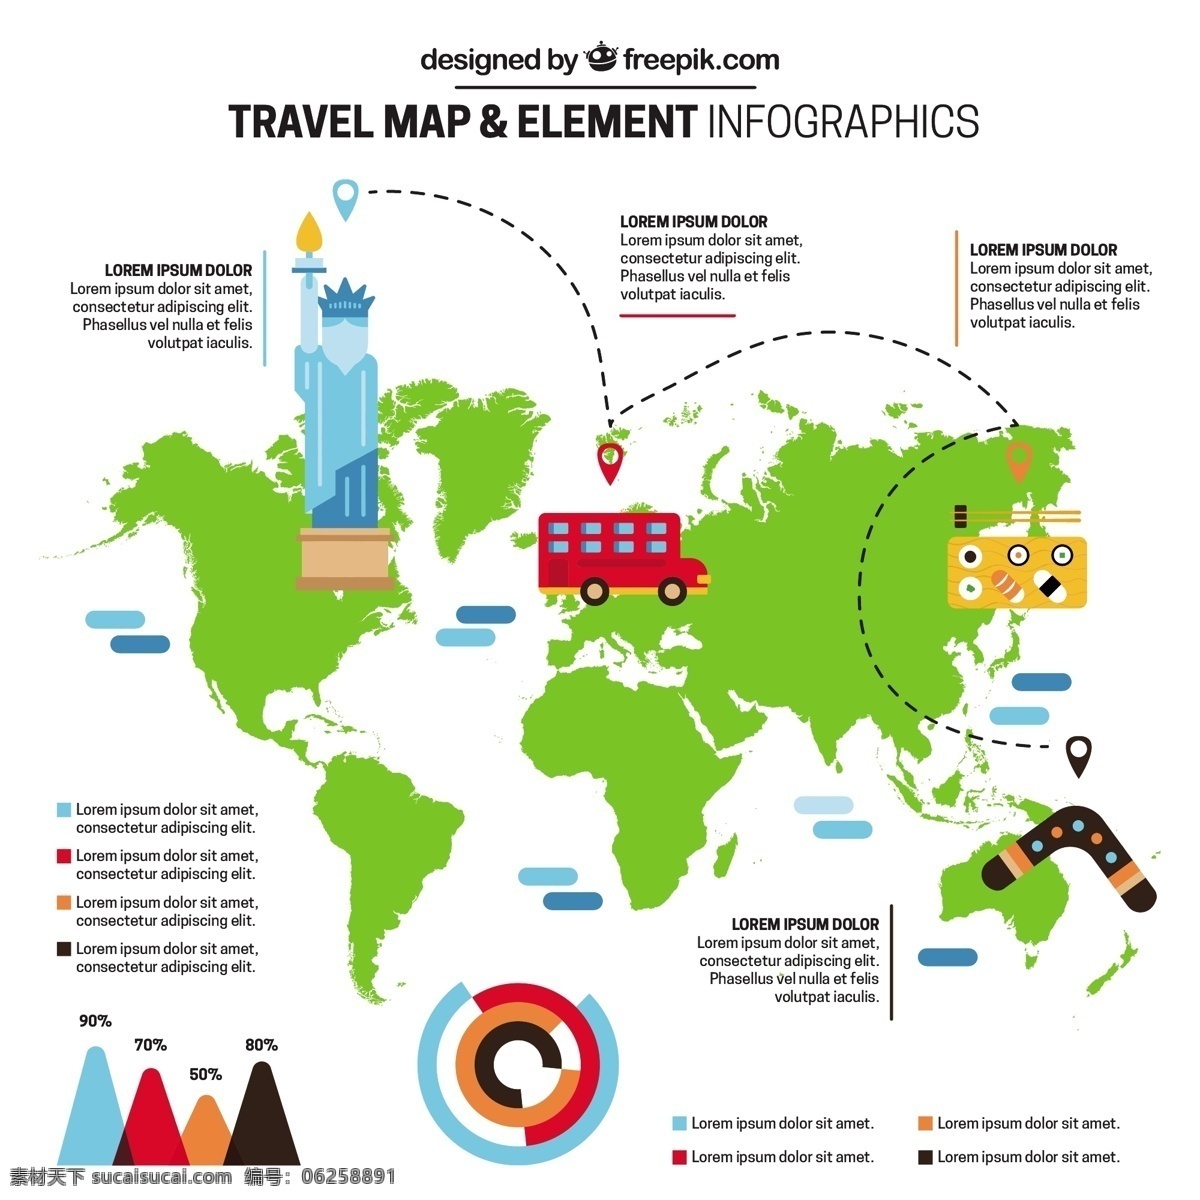 绿地 图 旅游 信息 图表 计算机 地图 世界 绿色 世界地图 图形 流程 数据 信息图表元素 元素 度假 旅行 信息图形